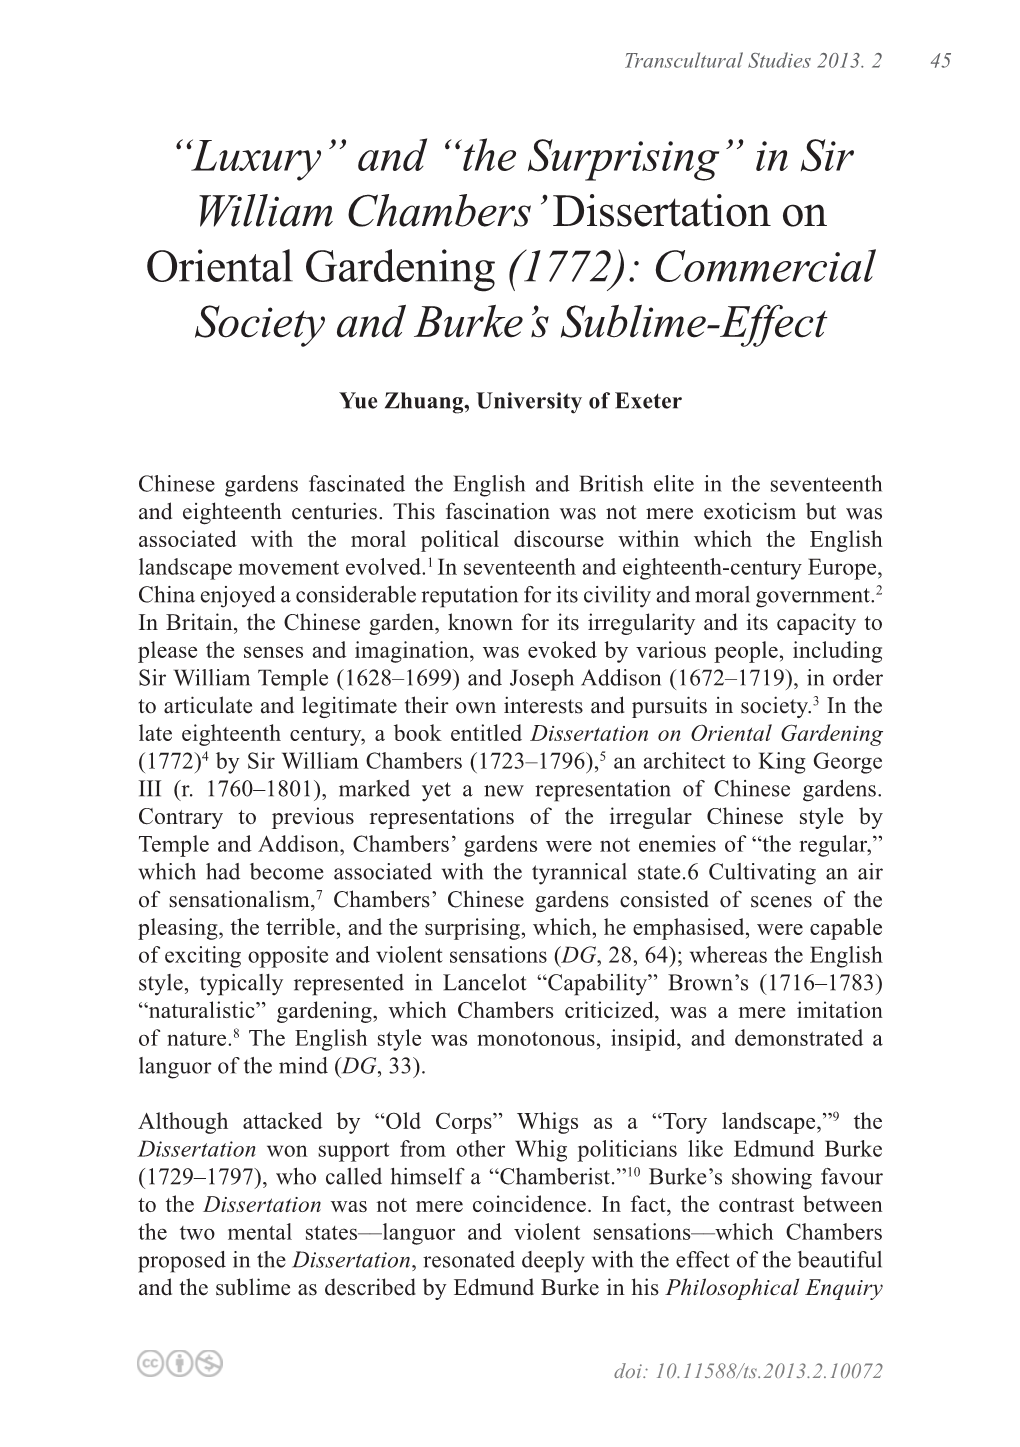 In Sir William Chambers' Dissertation on Oriental Gardening